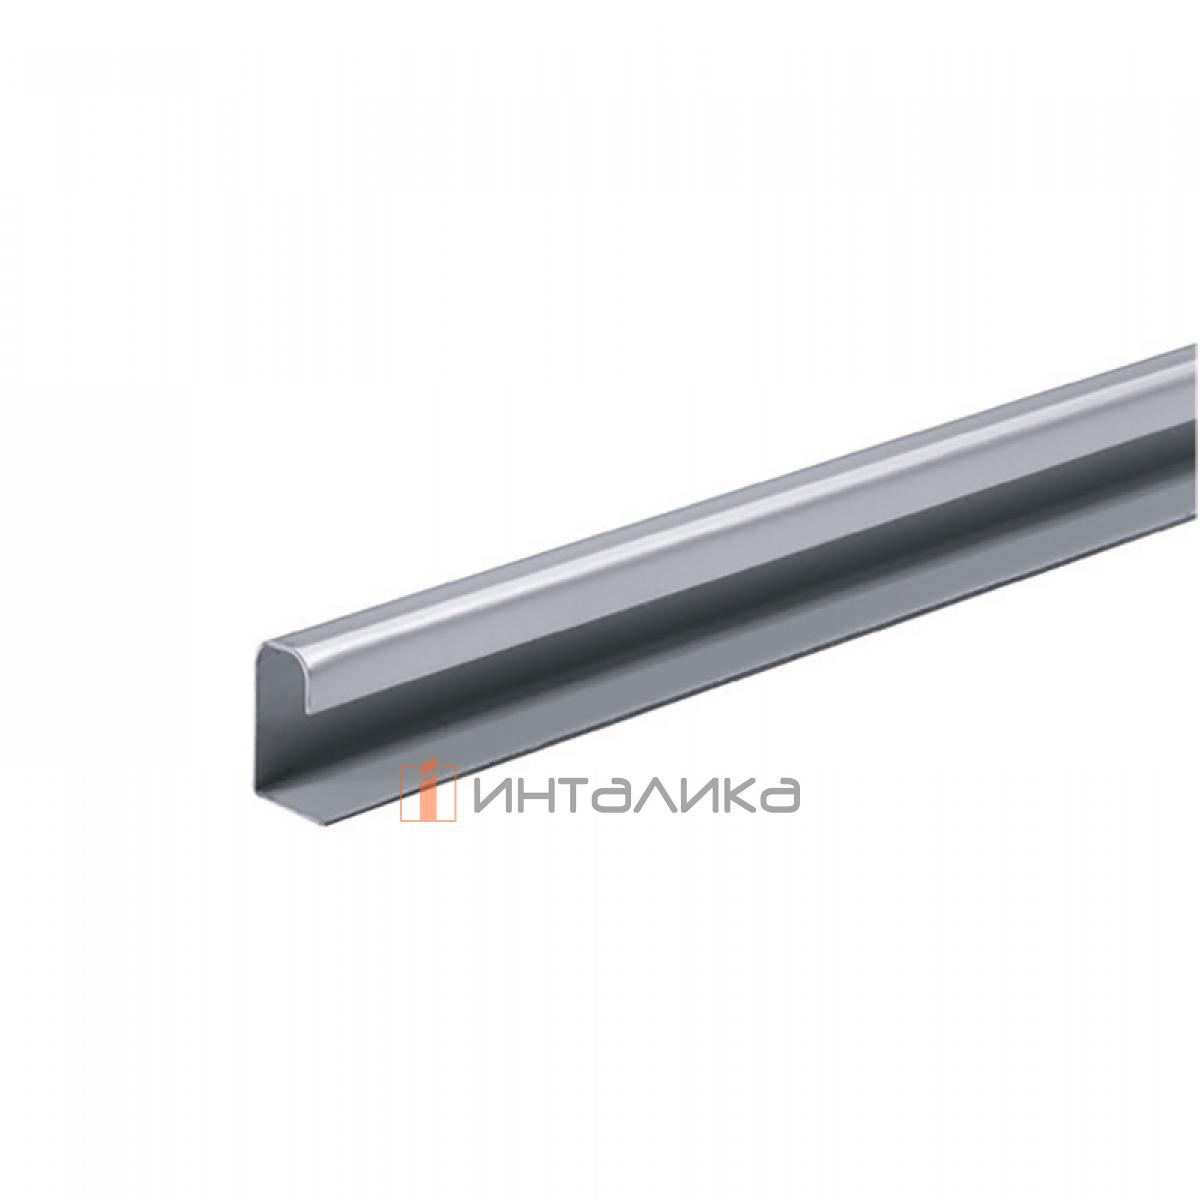 Ручка-профиль HETTICH для выокого шкафа, толщина двери 15-16 мм, L2500, сталь, серебристый